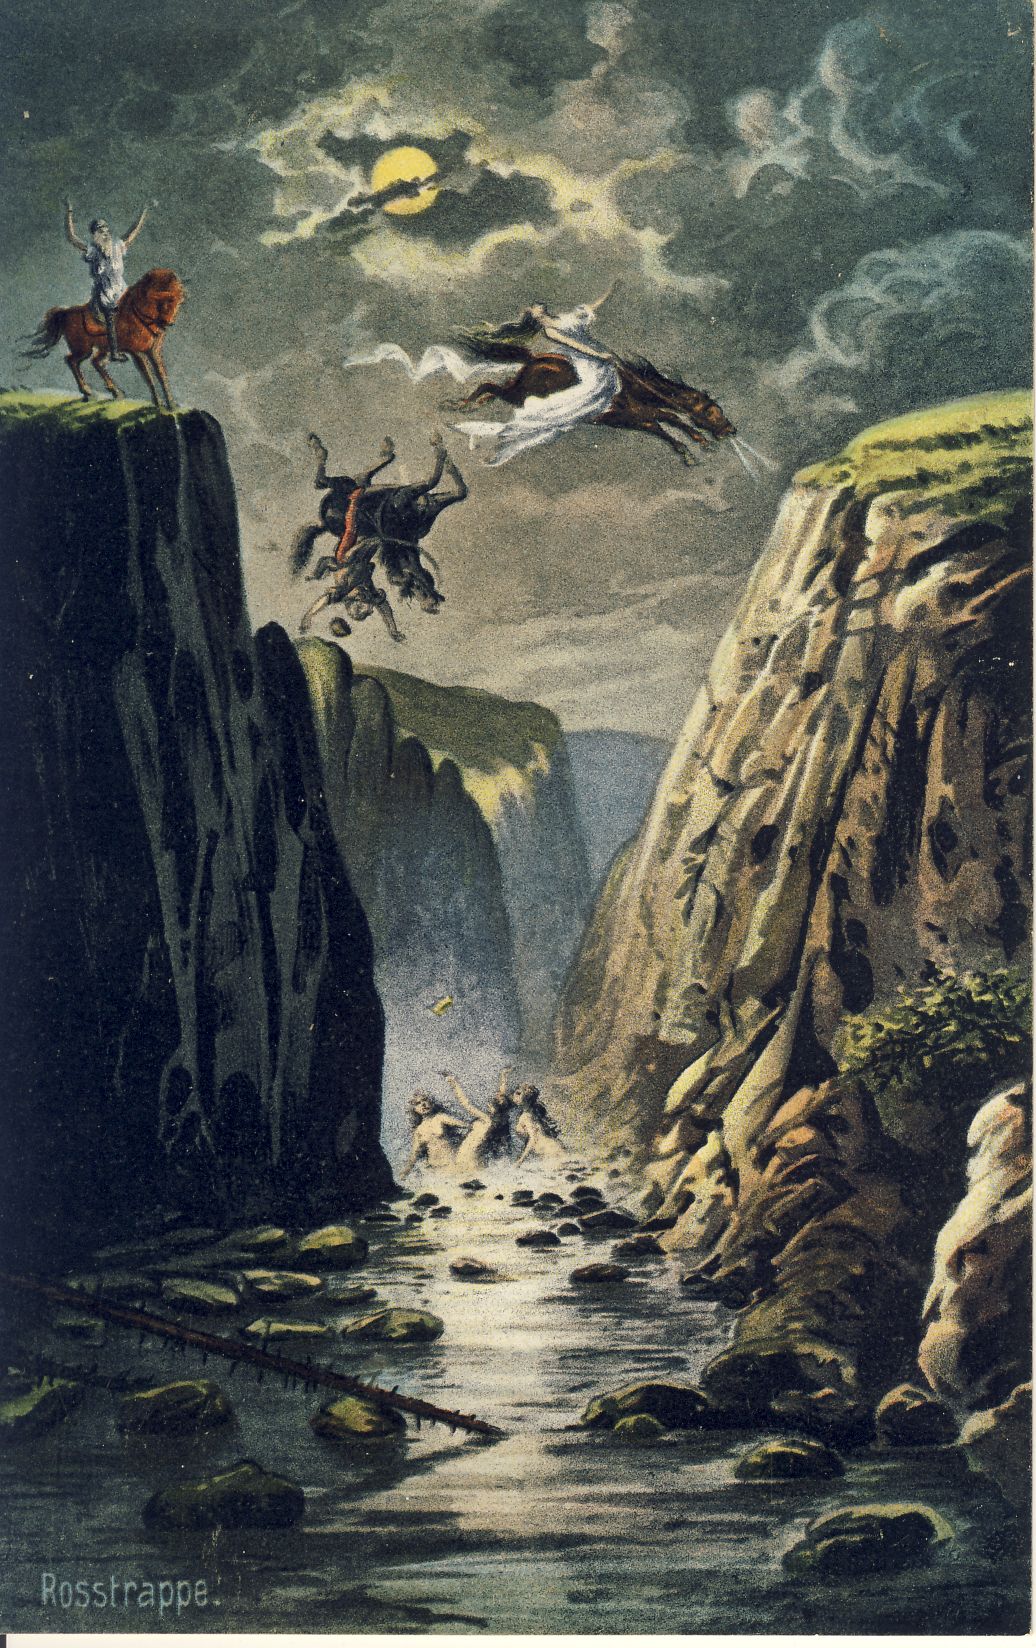 Die Sage von der Rosstrappe Postkarte (Deutsches Märchen- und Wesersagenmuseum CC BY-NC-SA)